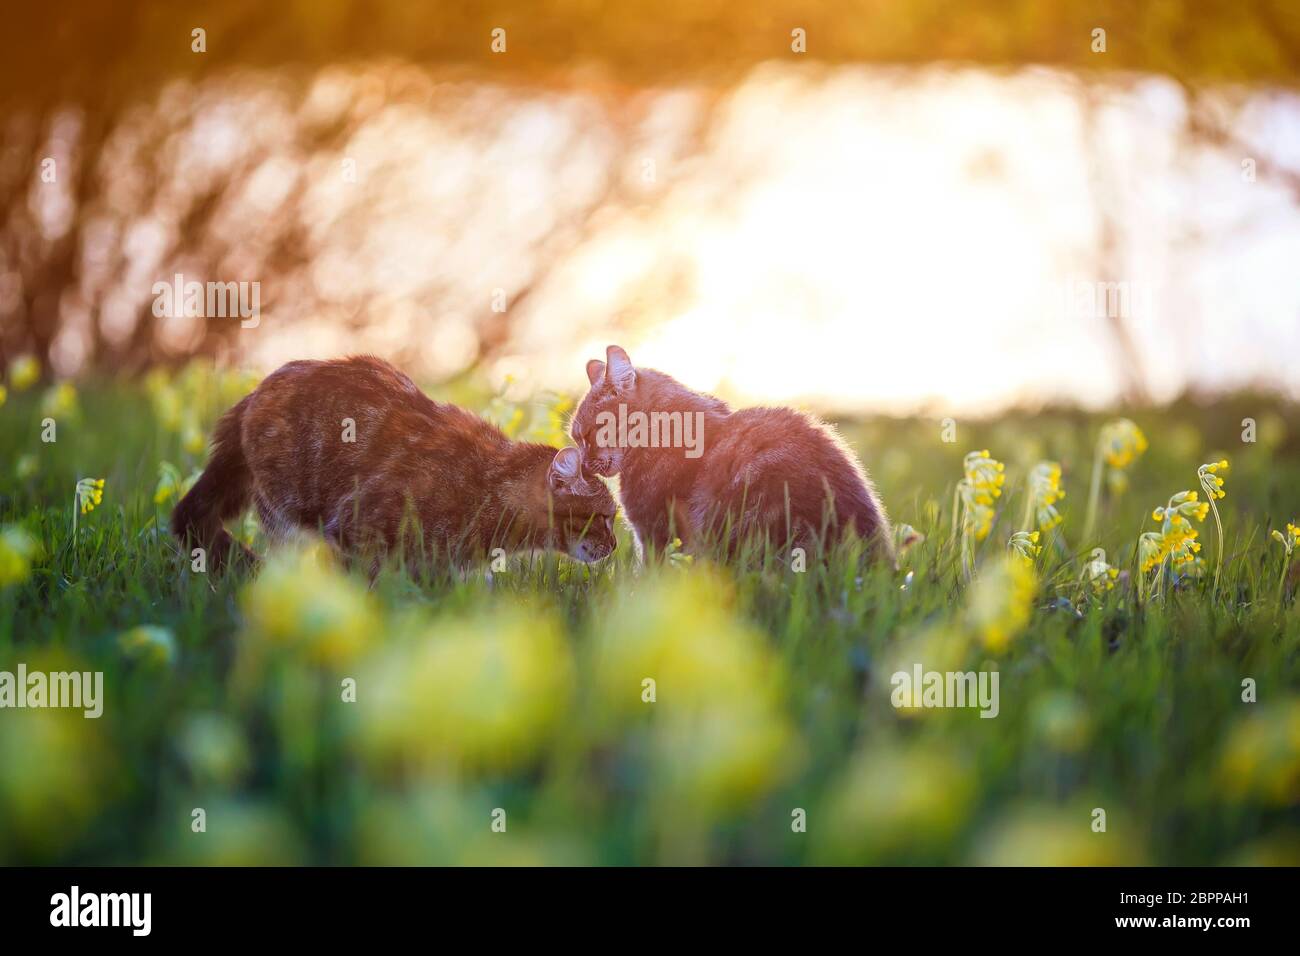 Zwei niedliche Liebhaberkatzen gehen auf einer sommerlich blühenden Wiese im Licht des warmen Sonnenlichts und streicheln sich gegenseitig Stockfoto